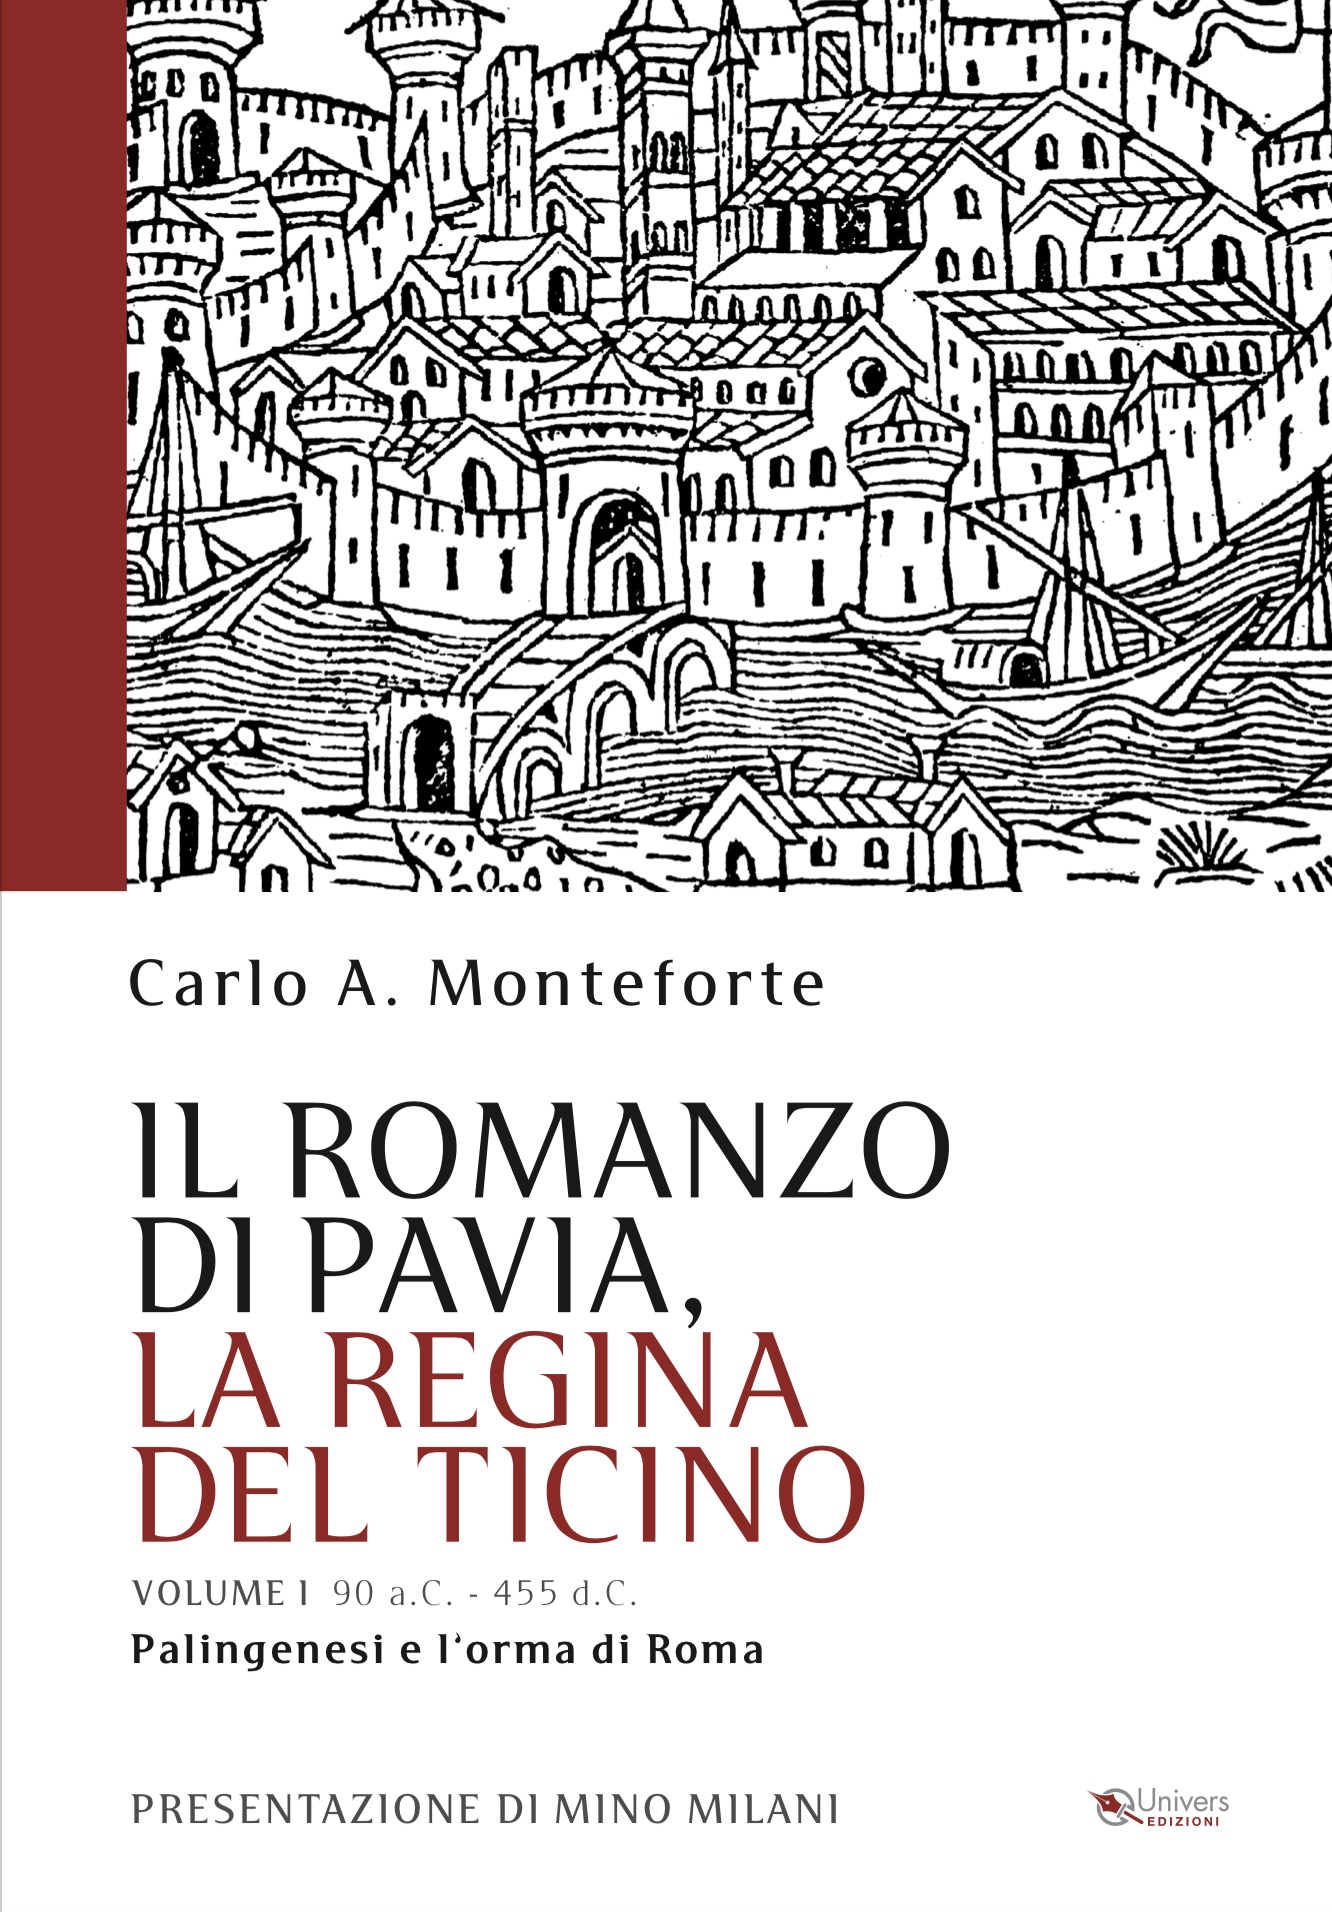 IL ROMANZO DI PAVIA, LA REGINA DEL TICINO - Palingenesi e l'orma di Roma Vol. I 90 a.c. - 455 d.c..